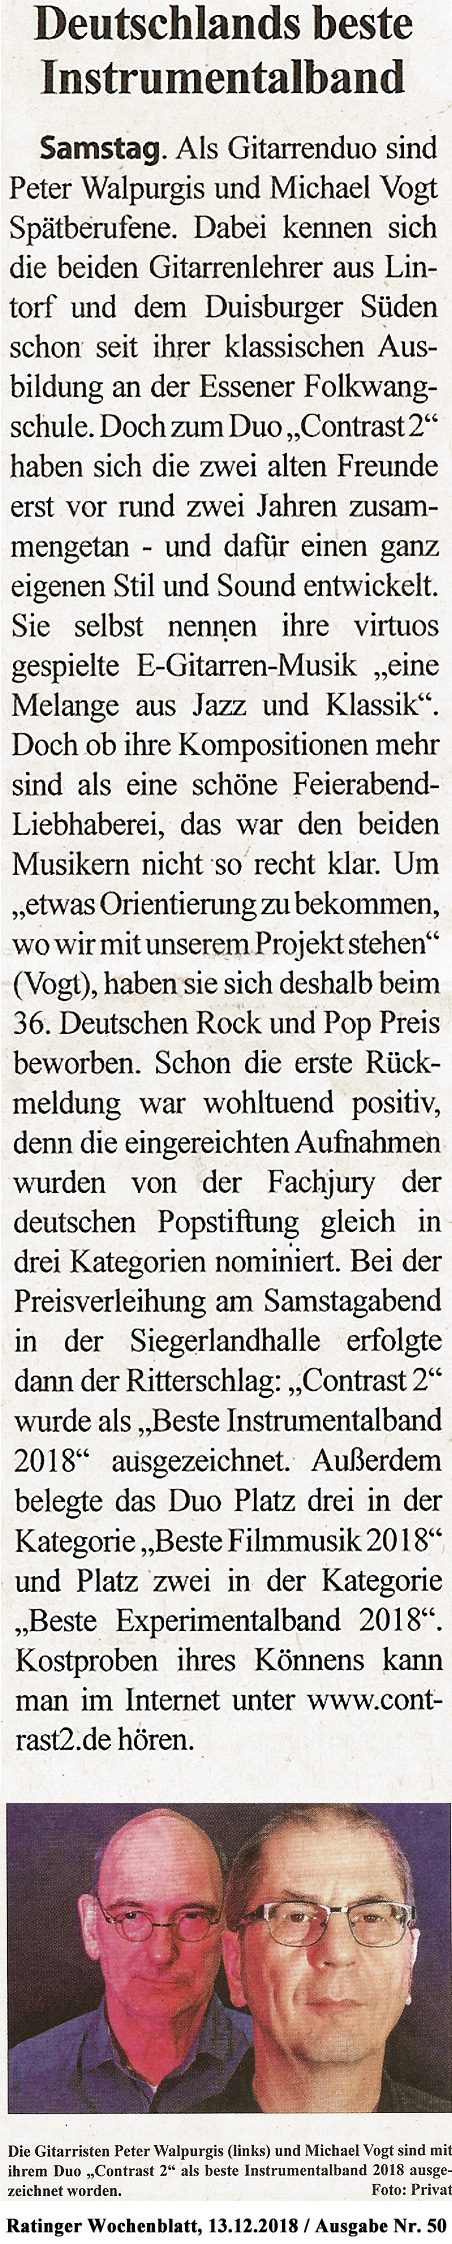 Presseartikel aus dem Ratinger Wochenblatt Nr.50 vom 13.12.2018 über die Auszeichnung von Contrast2 'Beste Instrumentalband 2018' vom Deutschen Rock & Pop Preis 2018.